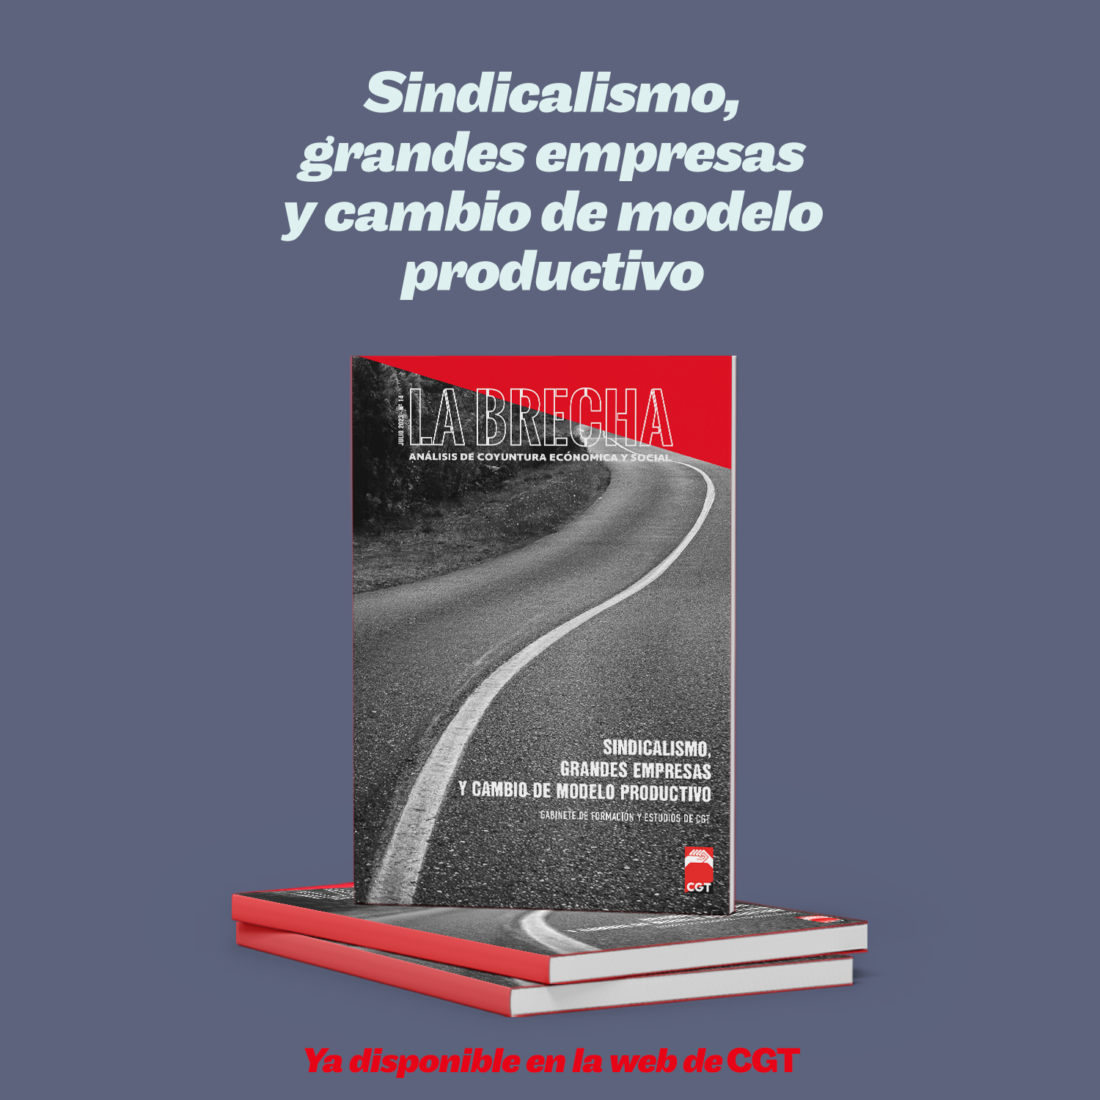 CGT presenta el número de julio de la publicación La Brecha sobre “Sindicalismo, grandes empresas y cambio de modelo productivo”